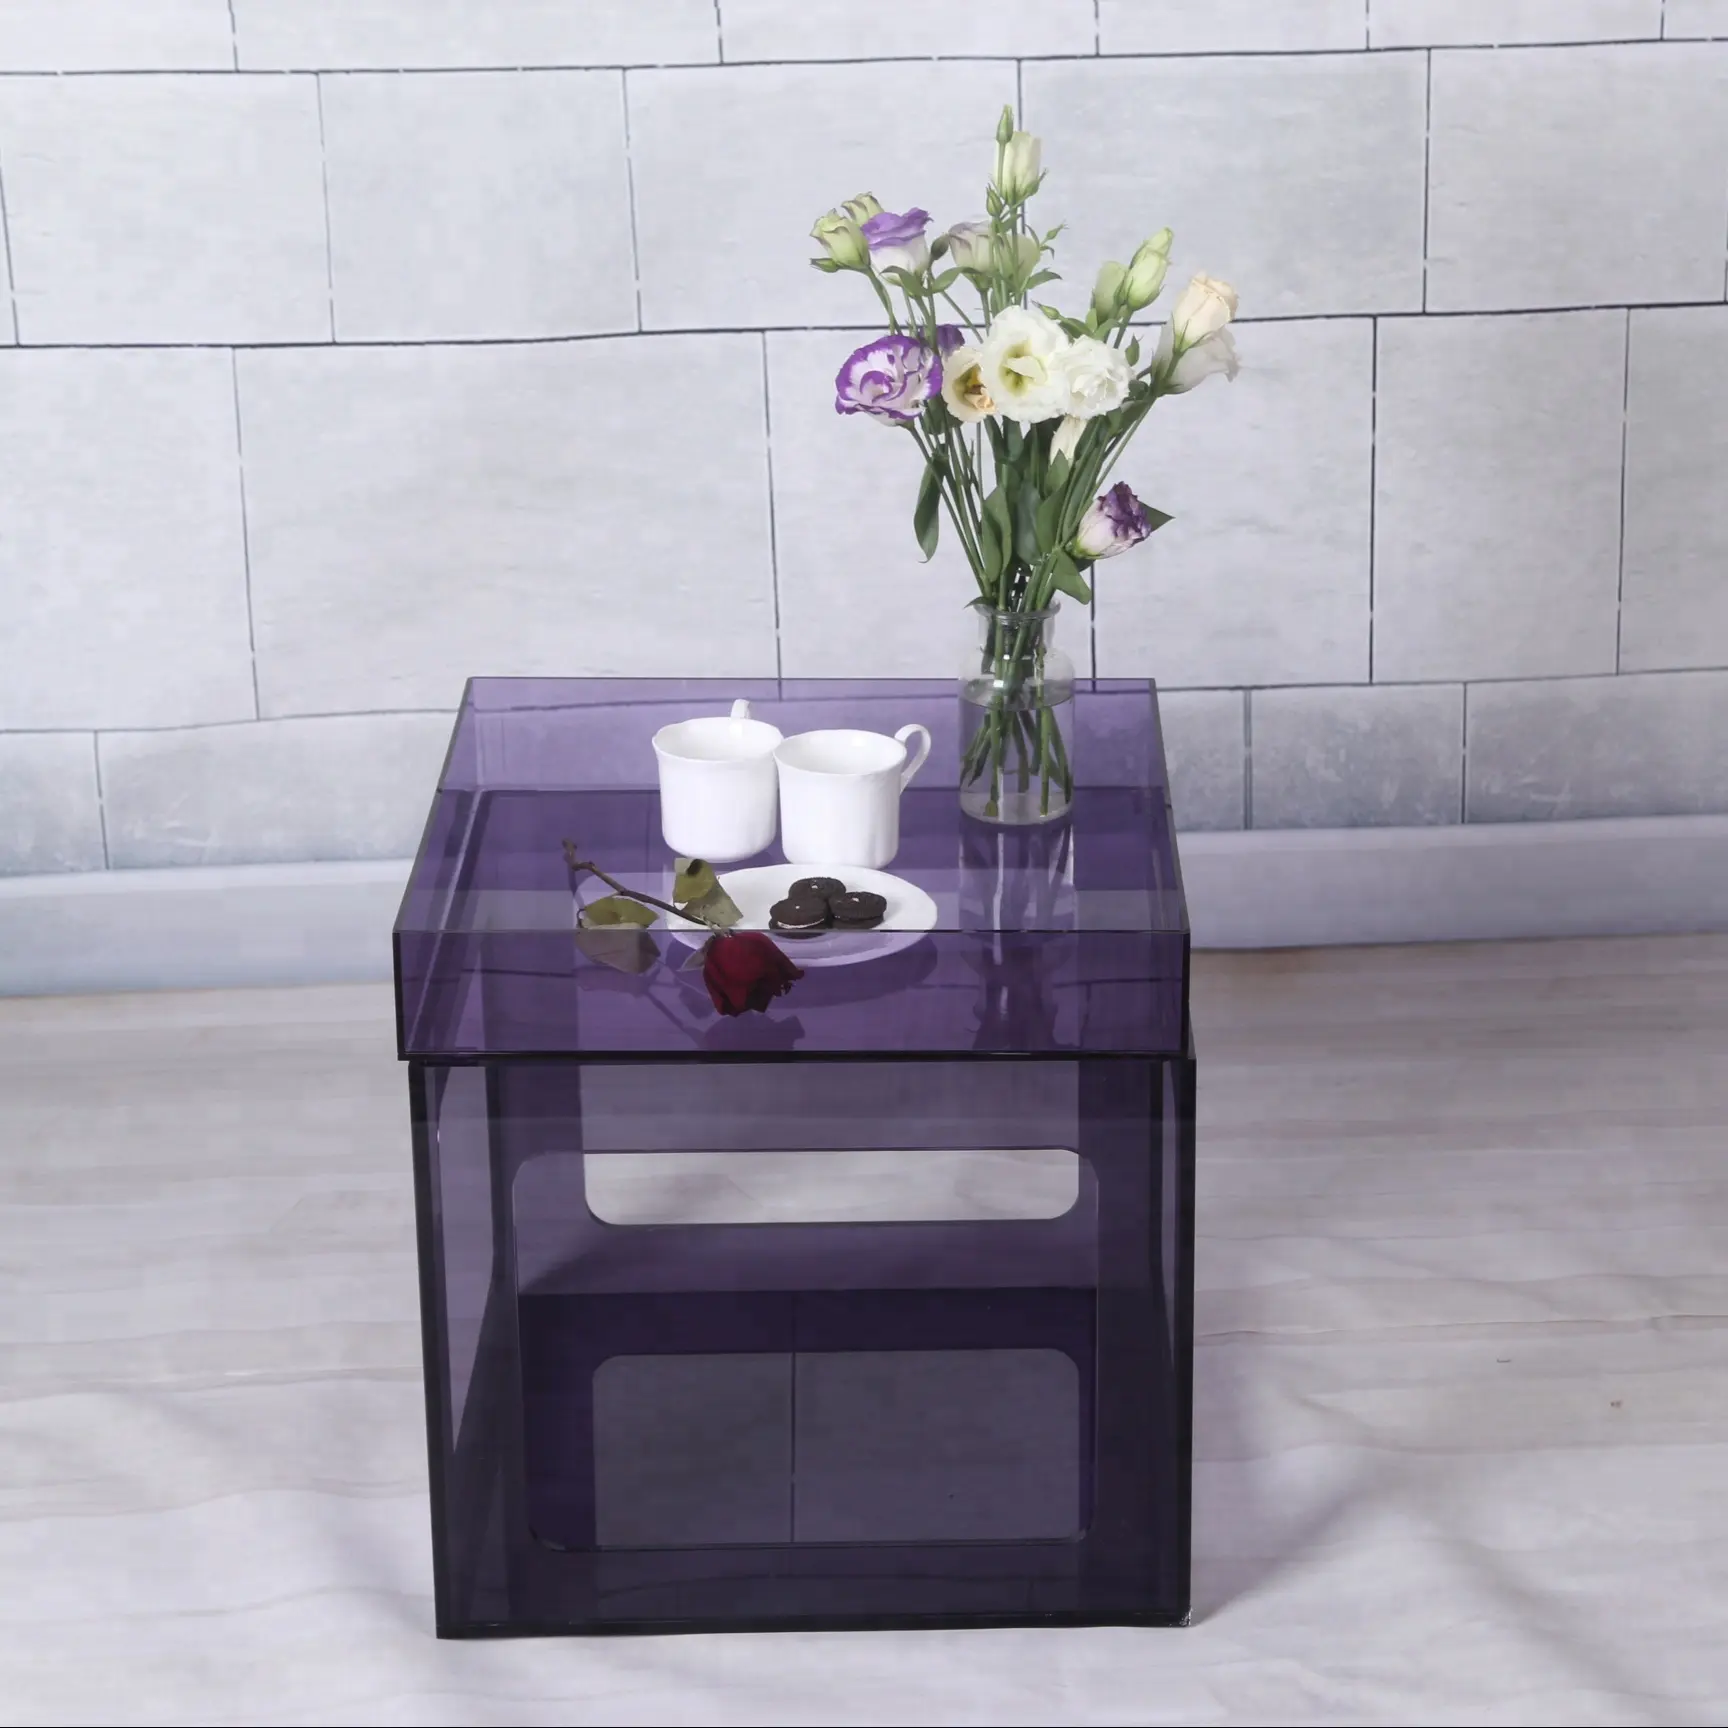 Уникальный дизайн кубической формы фиолетовый цвет акриловый журнальный столик с корзиной для хранения